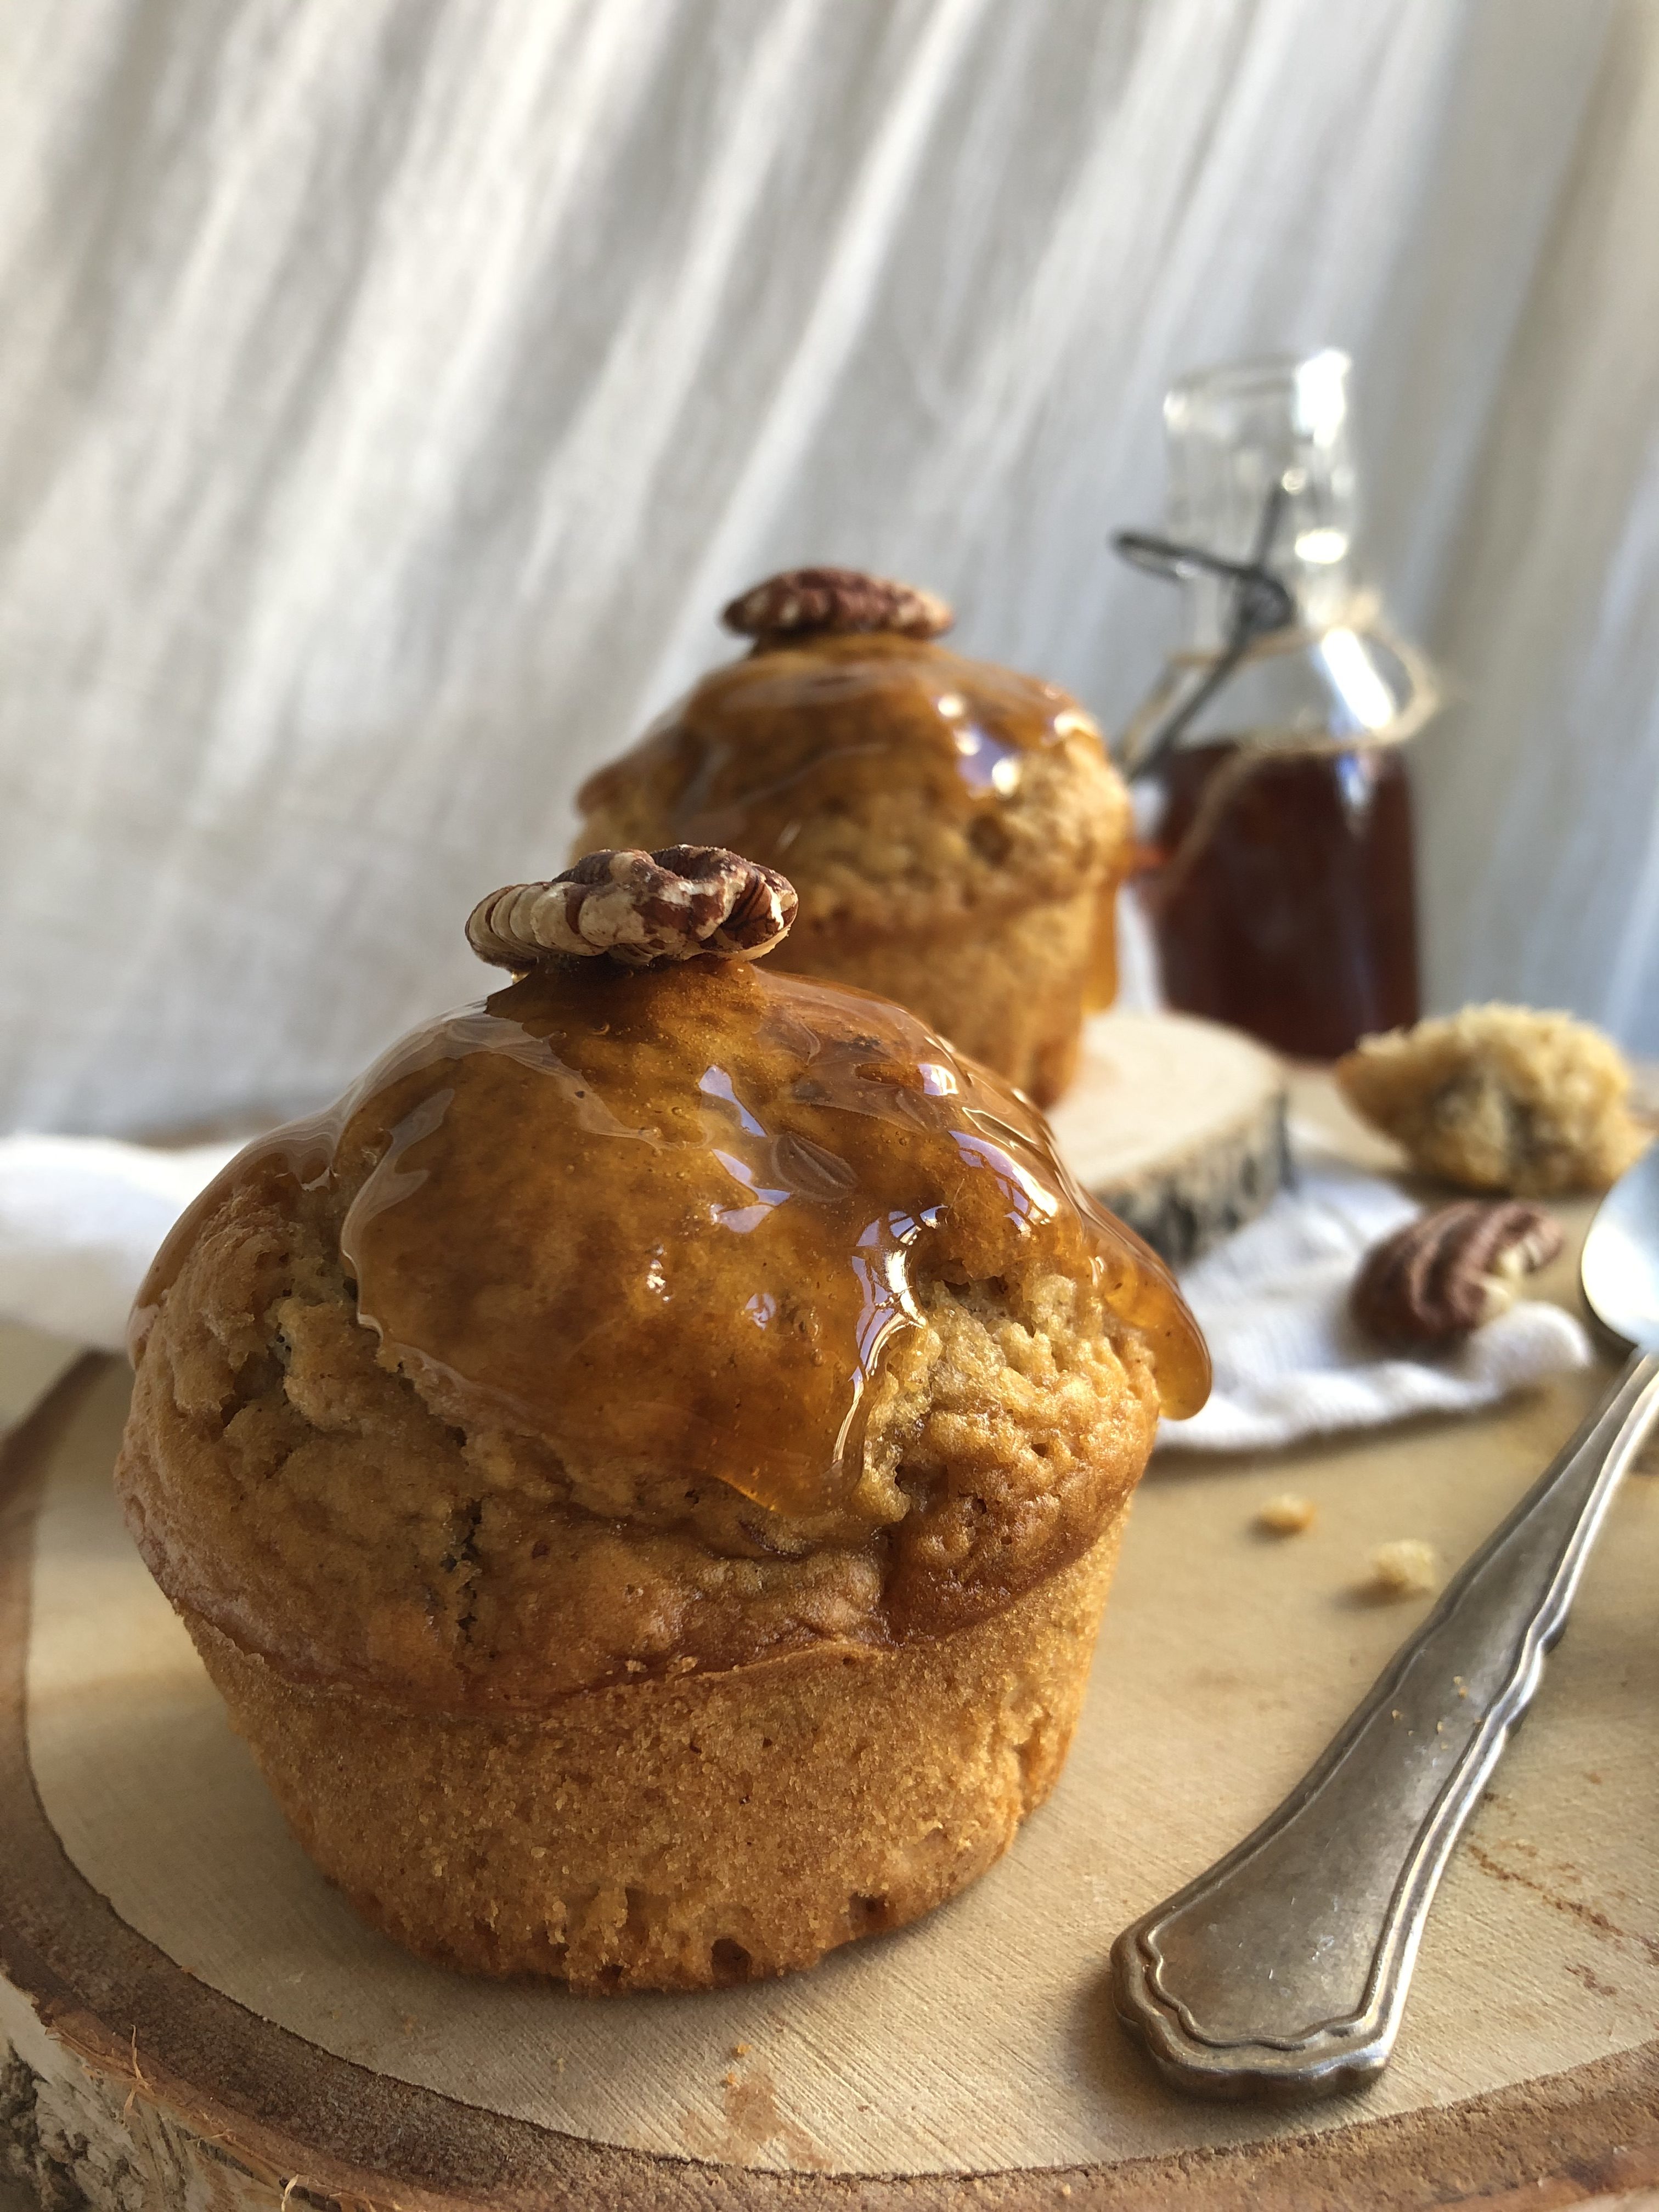 Muffin au sirop d’érable et noix de pécan [secret de cuisson]